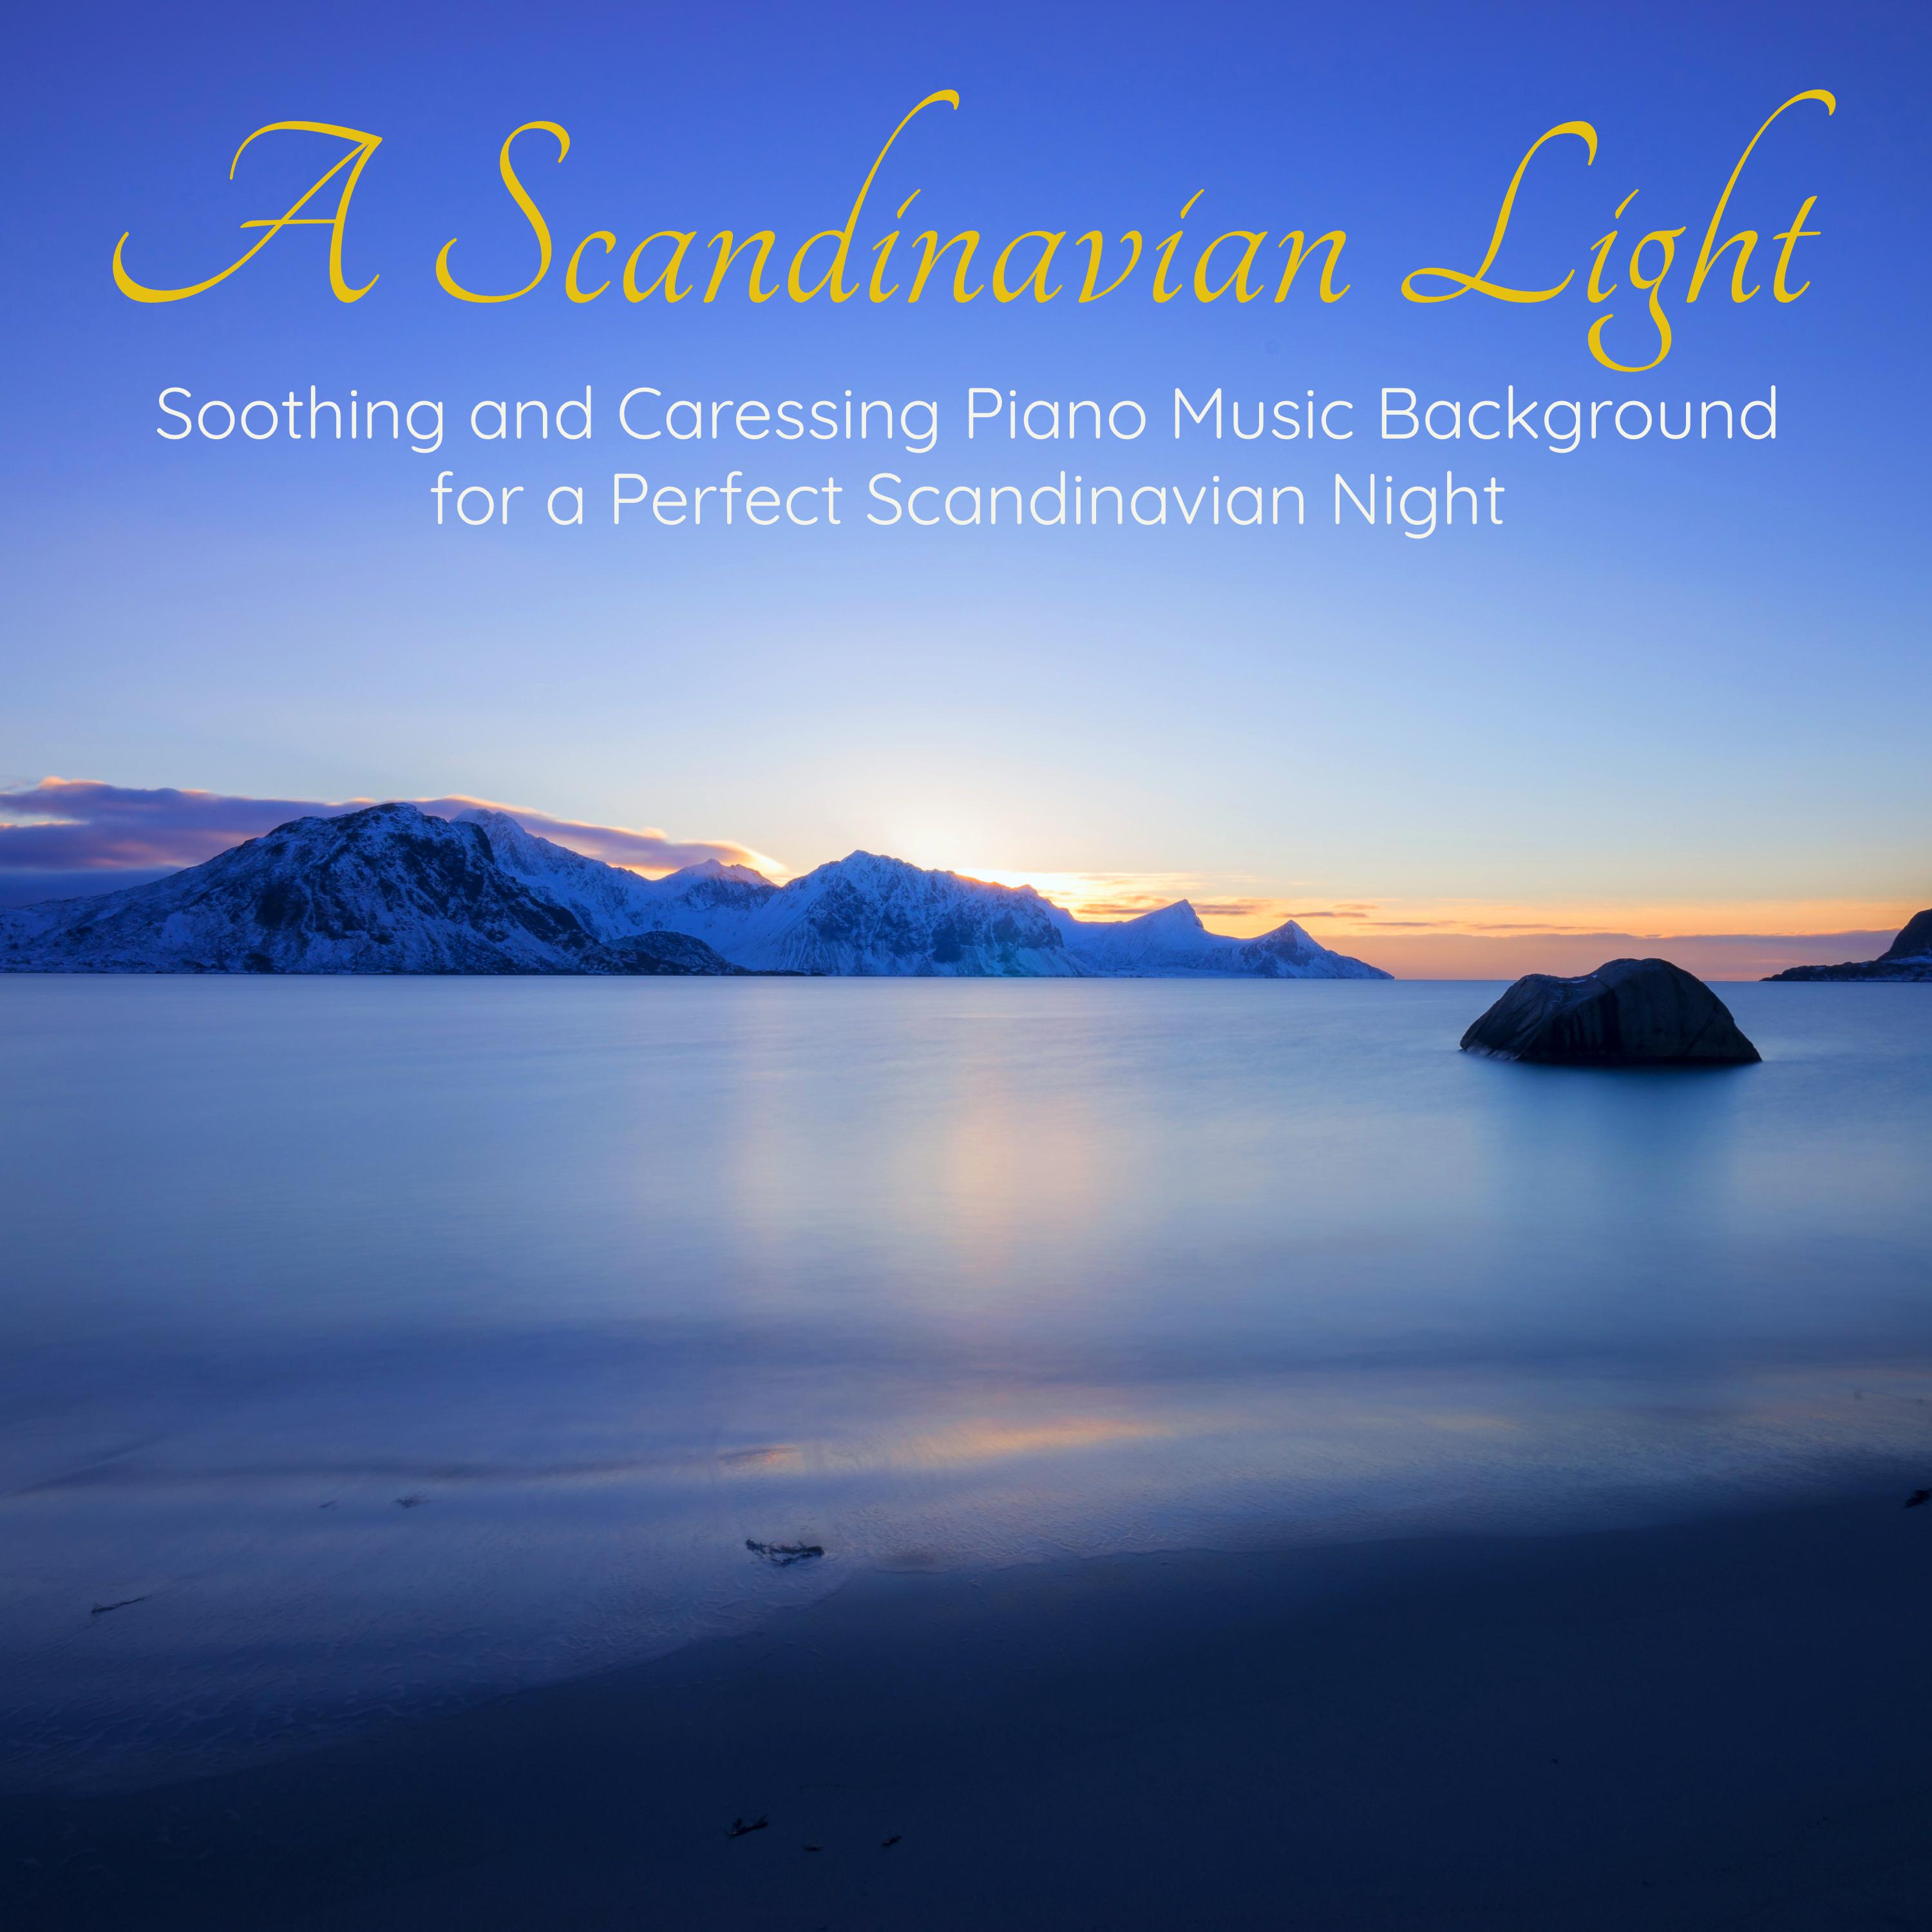 A Perfect Scandinavian Night - Listen Everything